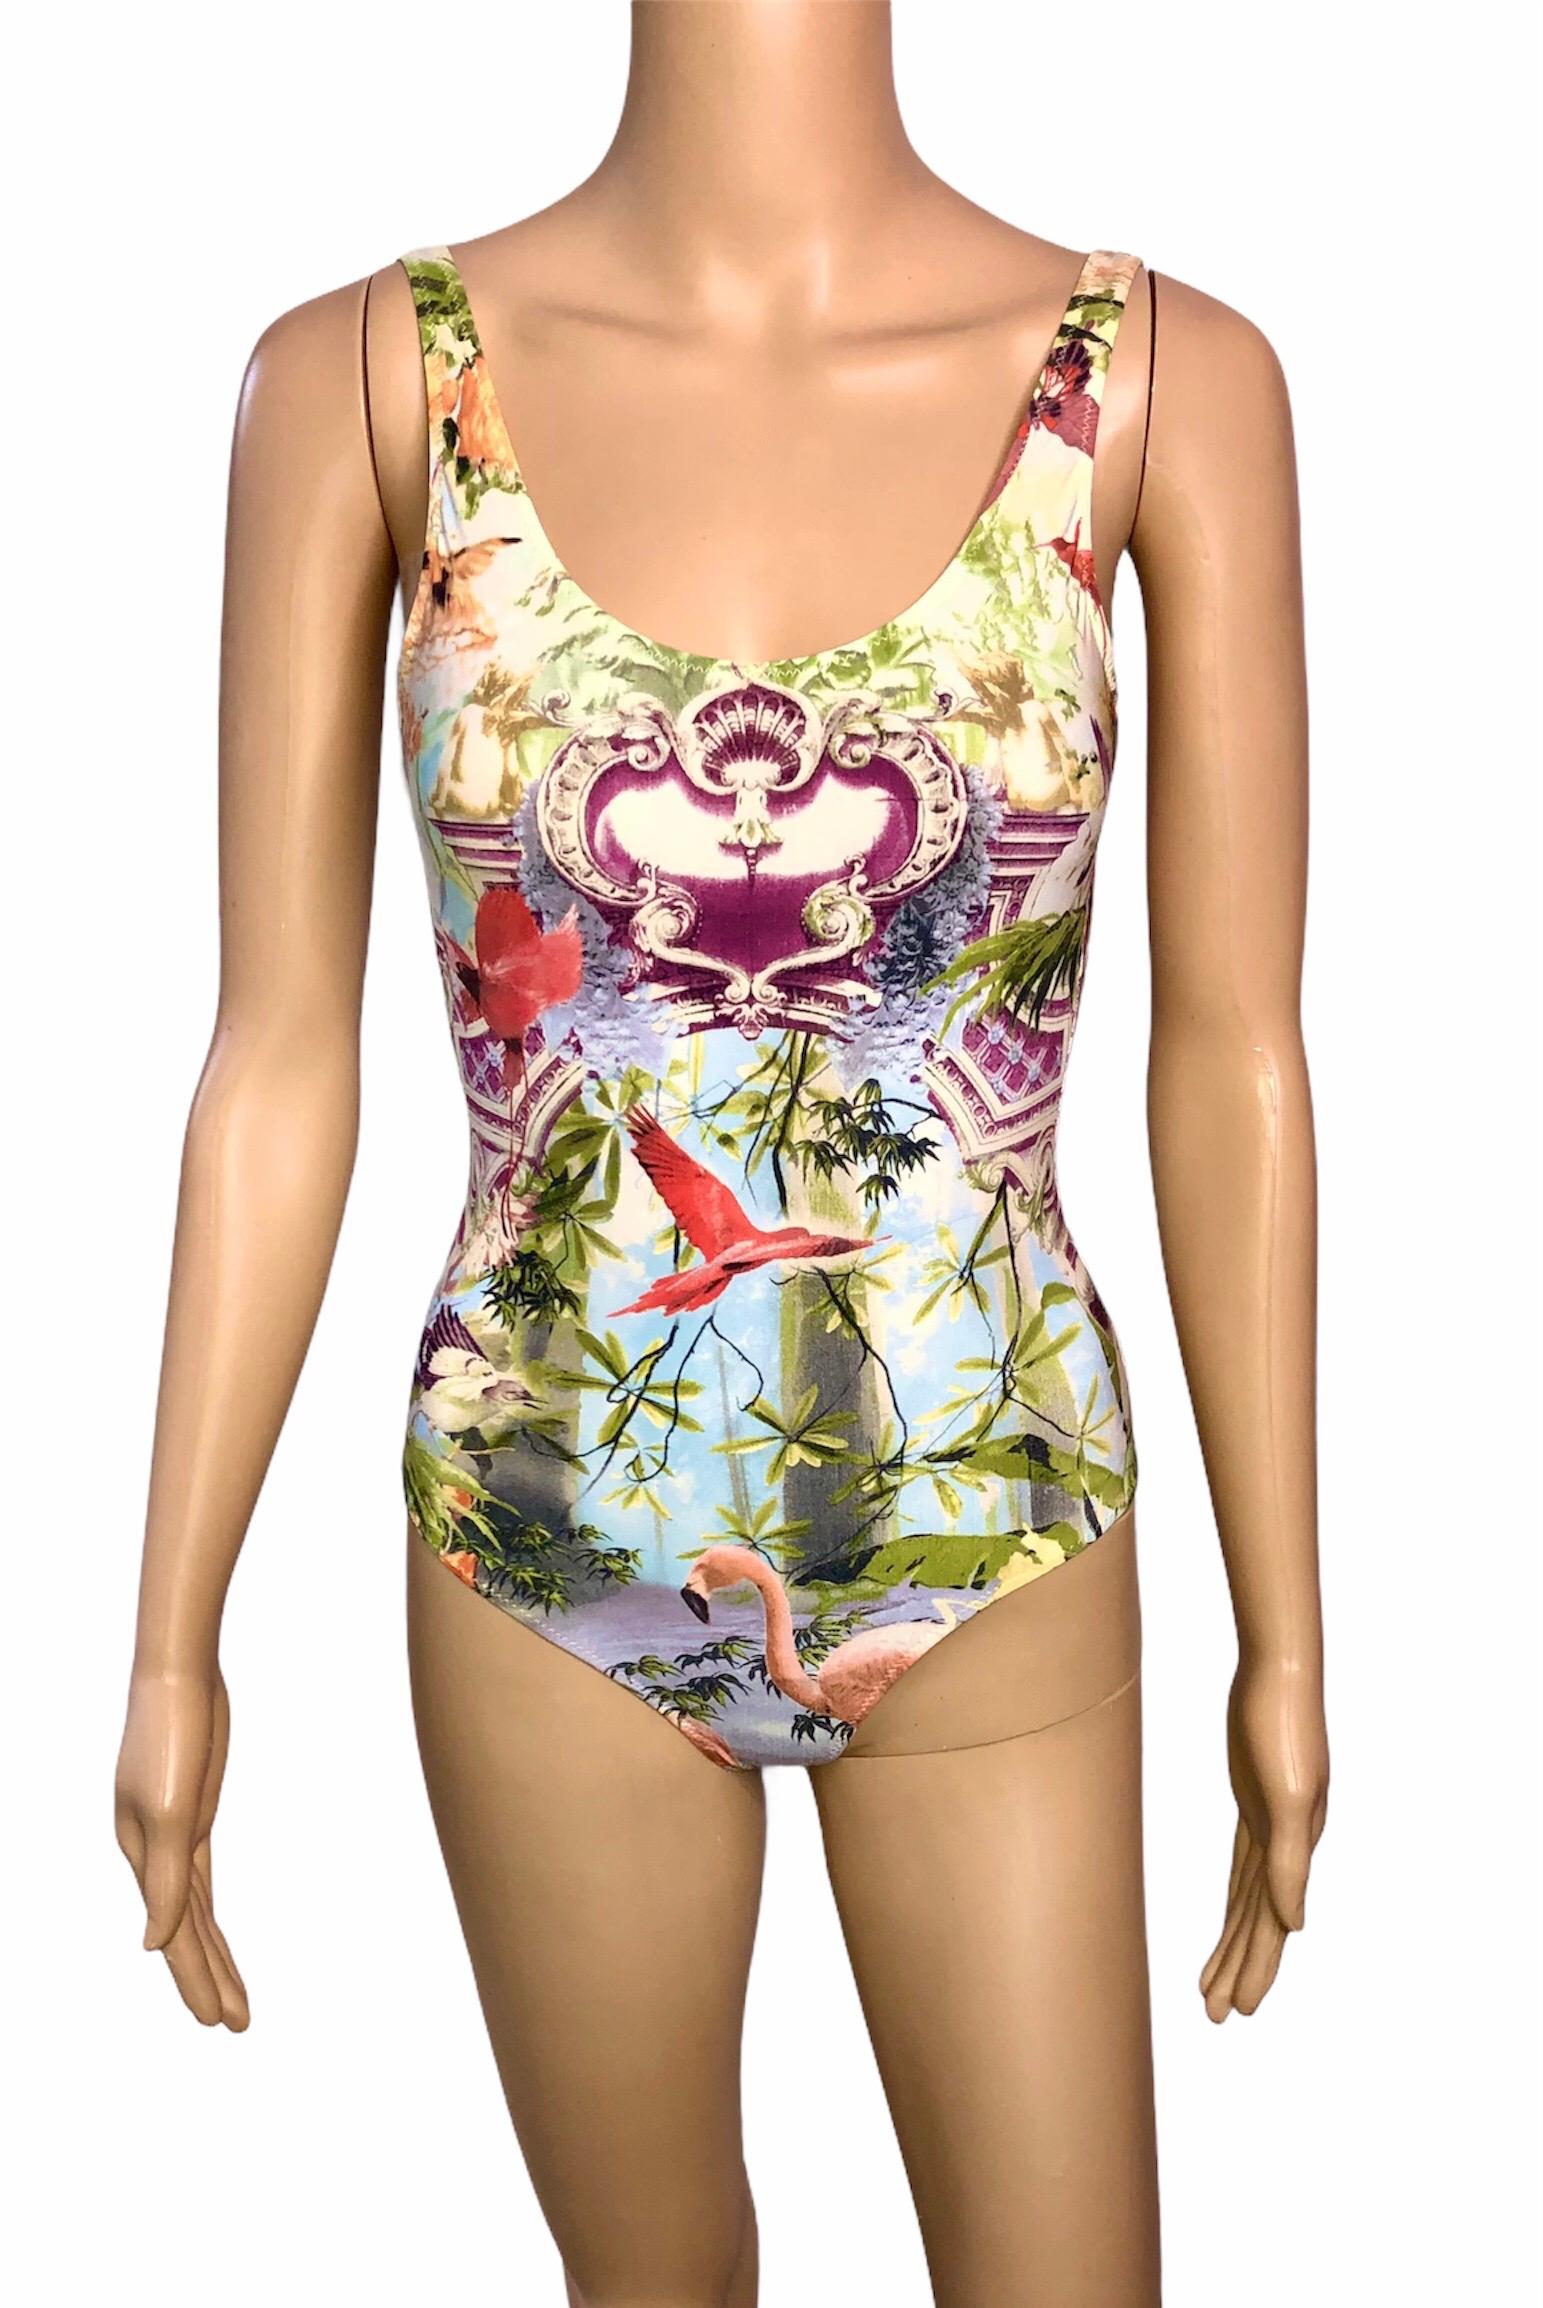 Beige Jean Paul Gaultier Soleil S/S 1999 Flamingo Tropical Bodysuit Swimwear Swimsuit For Sale